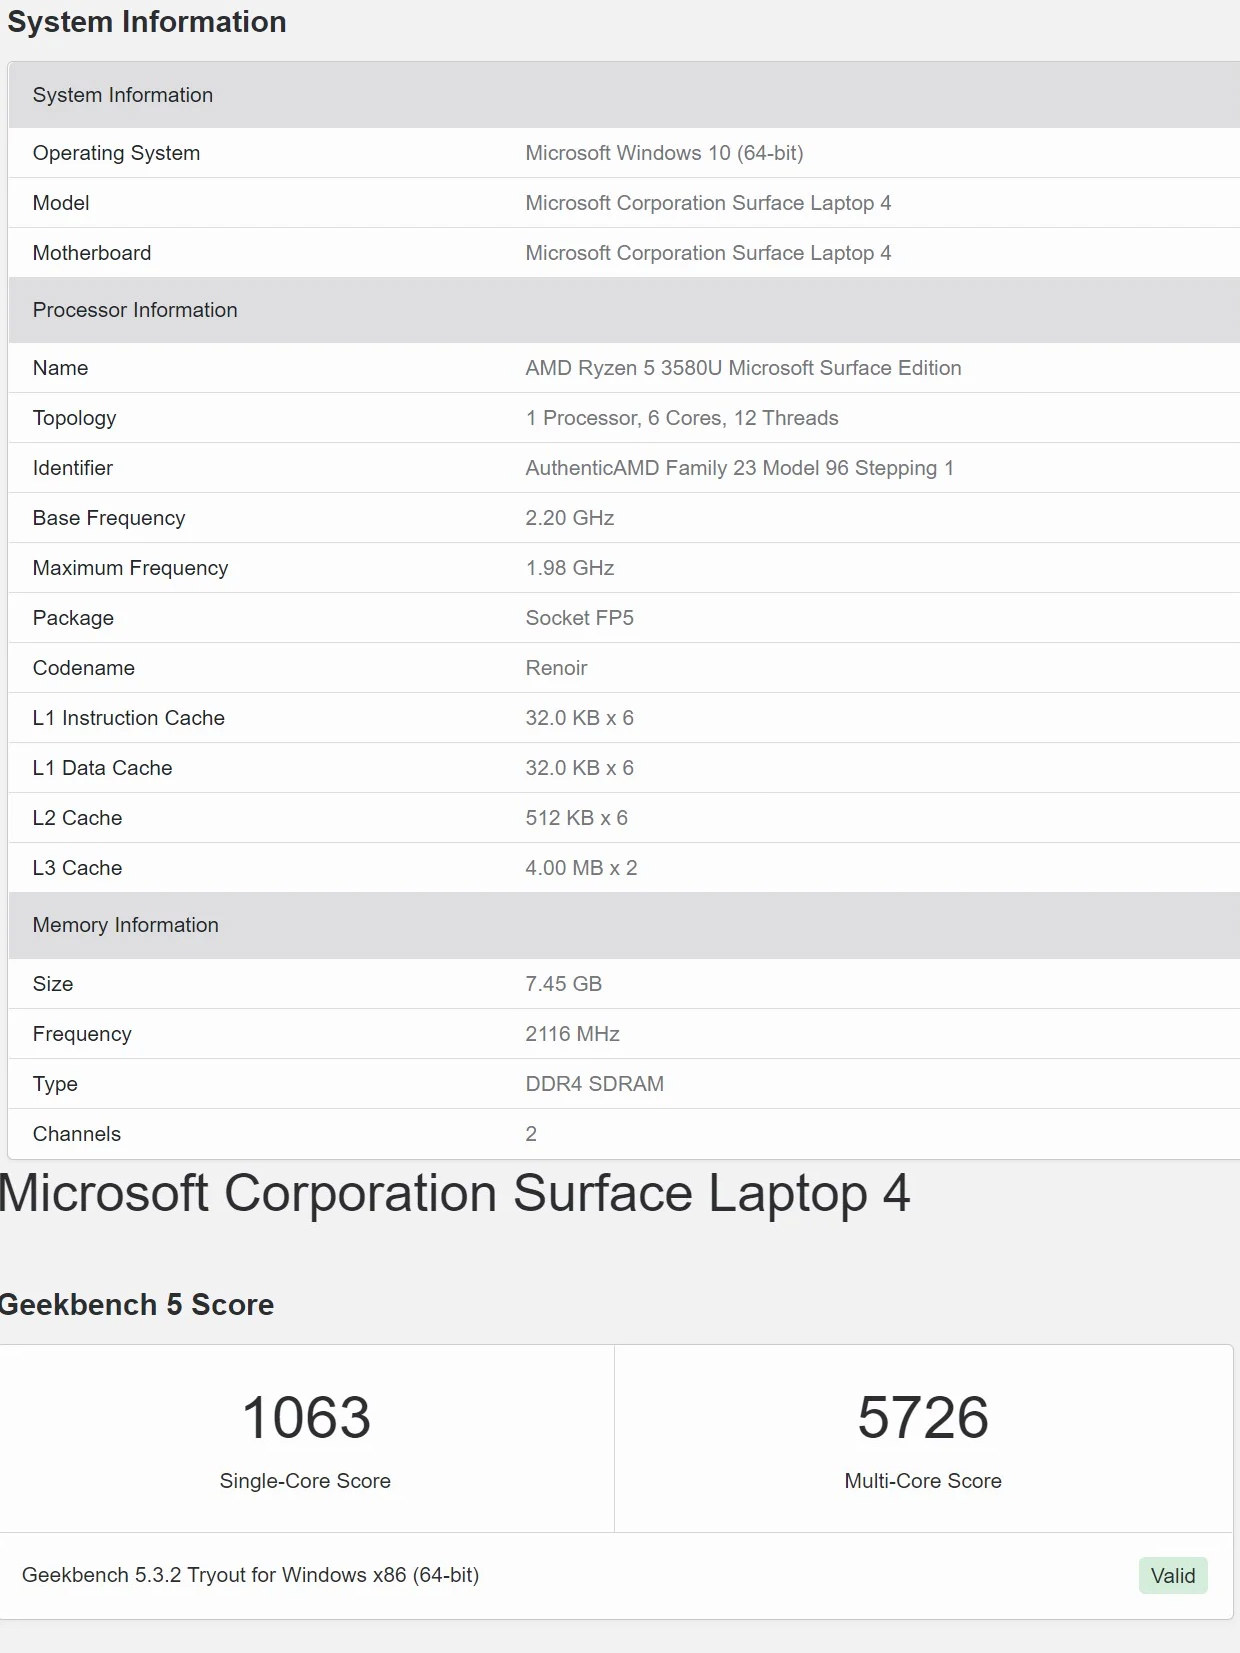 امتیاز سرفیس لپ تاپ 4 مدل AMD در گیک بنچ 